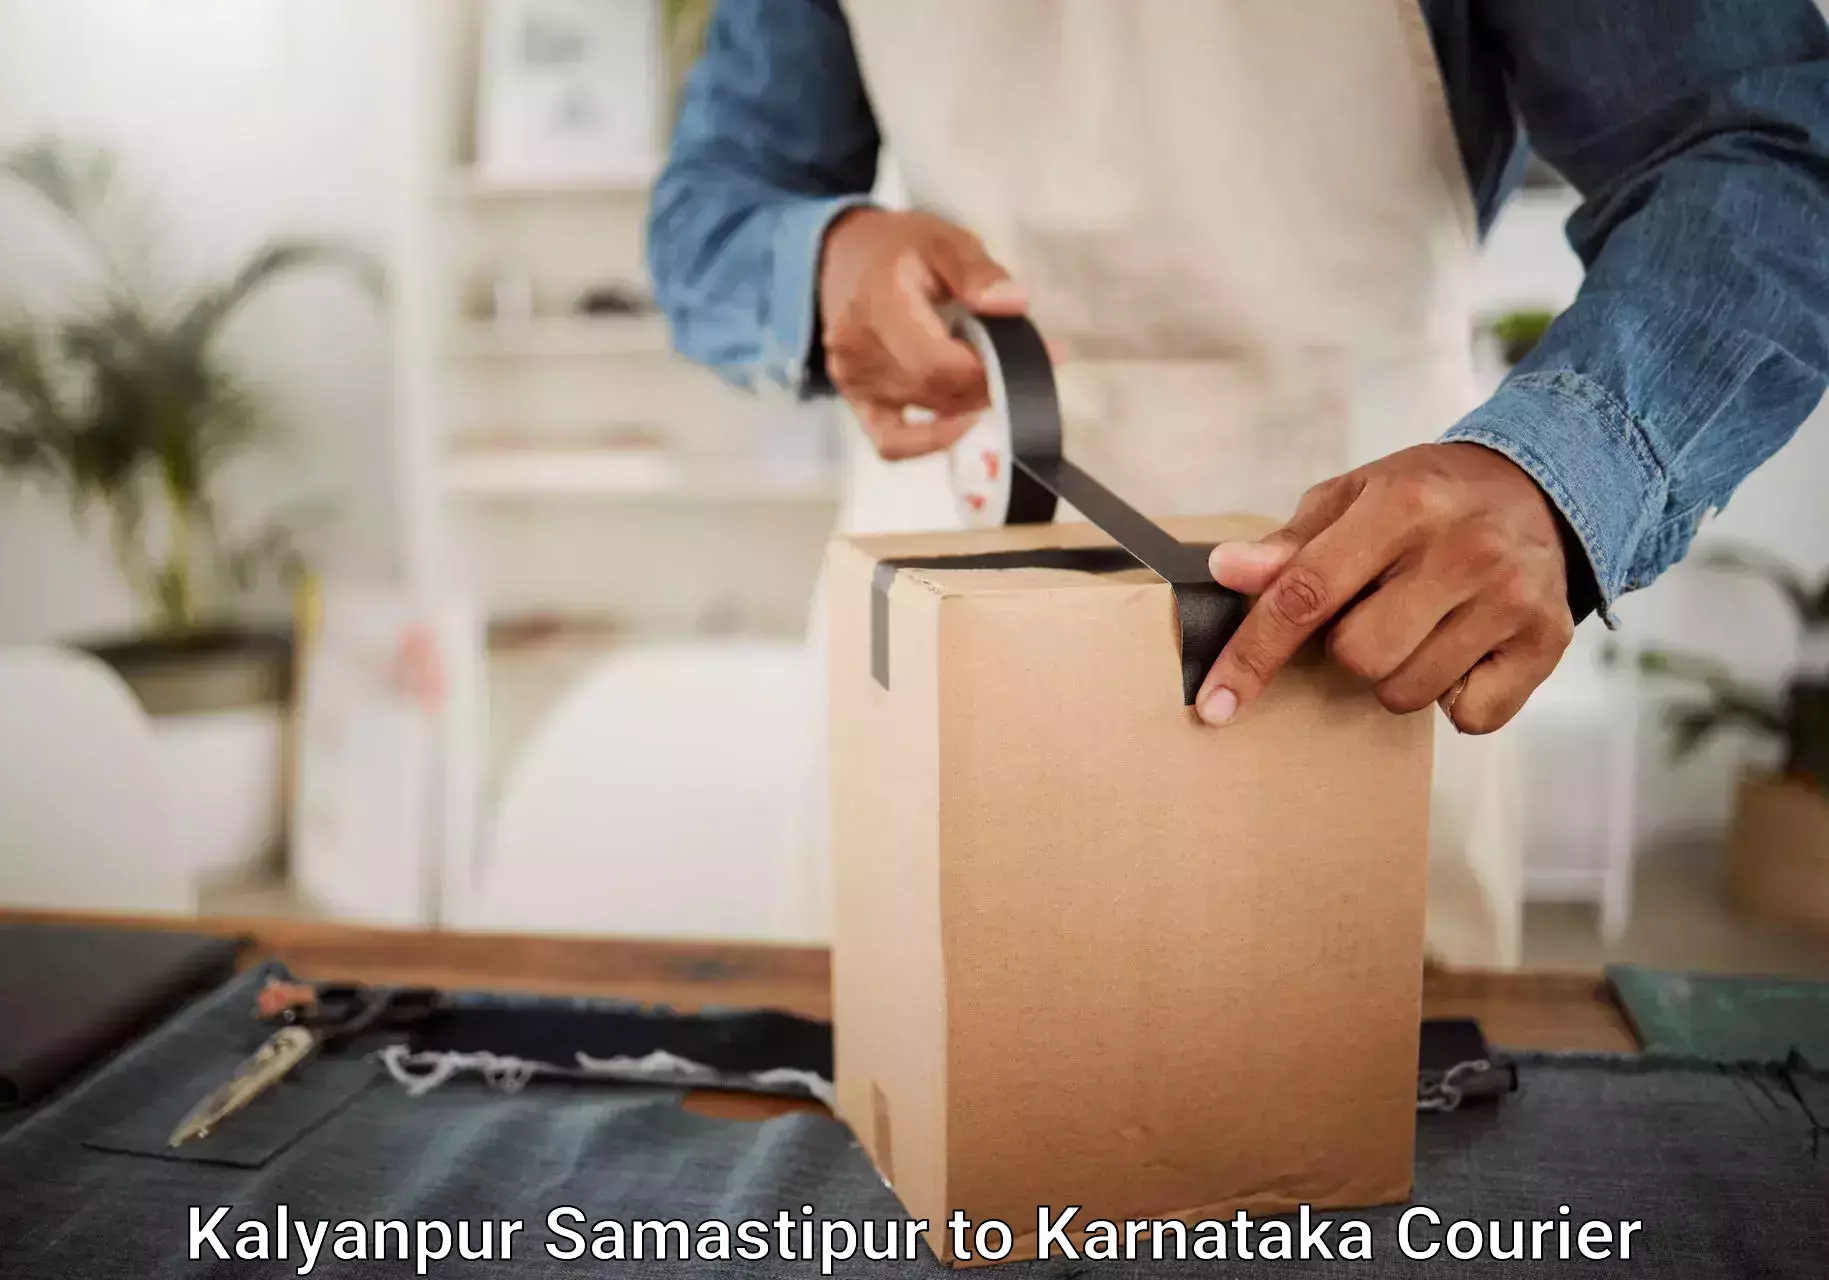 Emergency baggage service Kalyanpur Samastipur to Karnataka